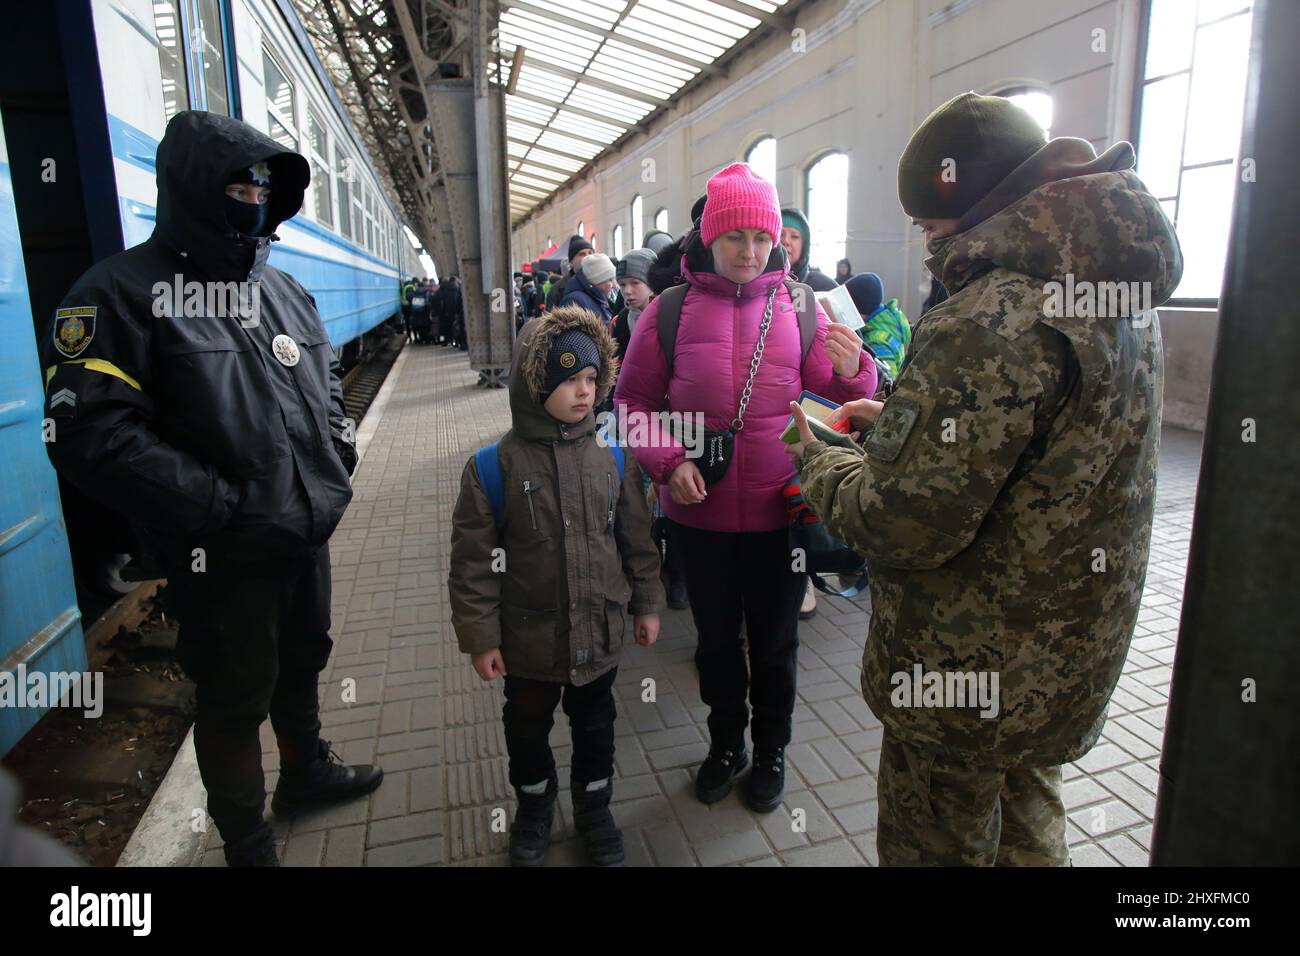 LVIV, UKRAINE - 11. MÄRZ 2022 - Ein Grenzschutz überprüft die Dokumente einer Frau, die mit einem Jungen reist, während Menschen, die vor der russischen Invasion fliehen, auf ein e warten Stockfoto